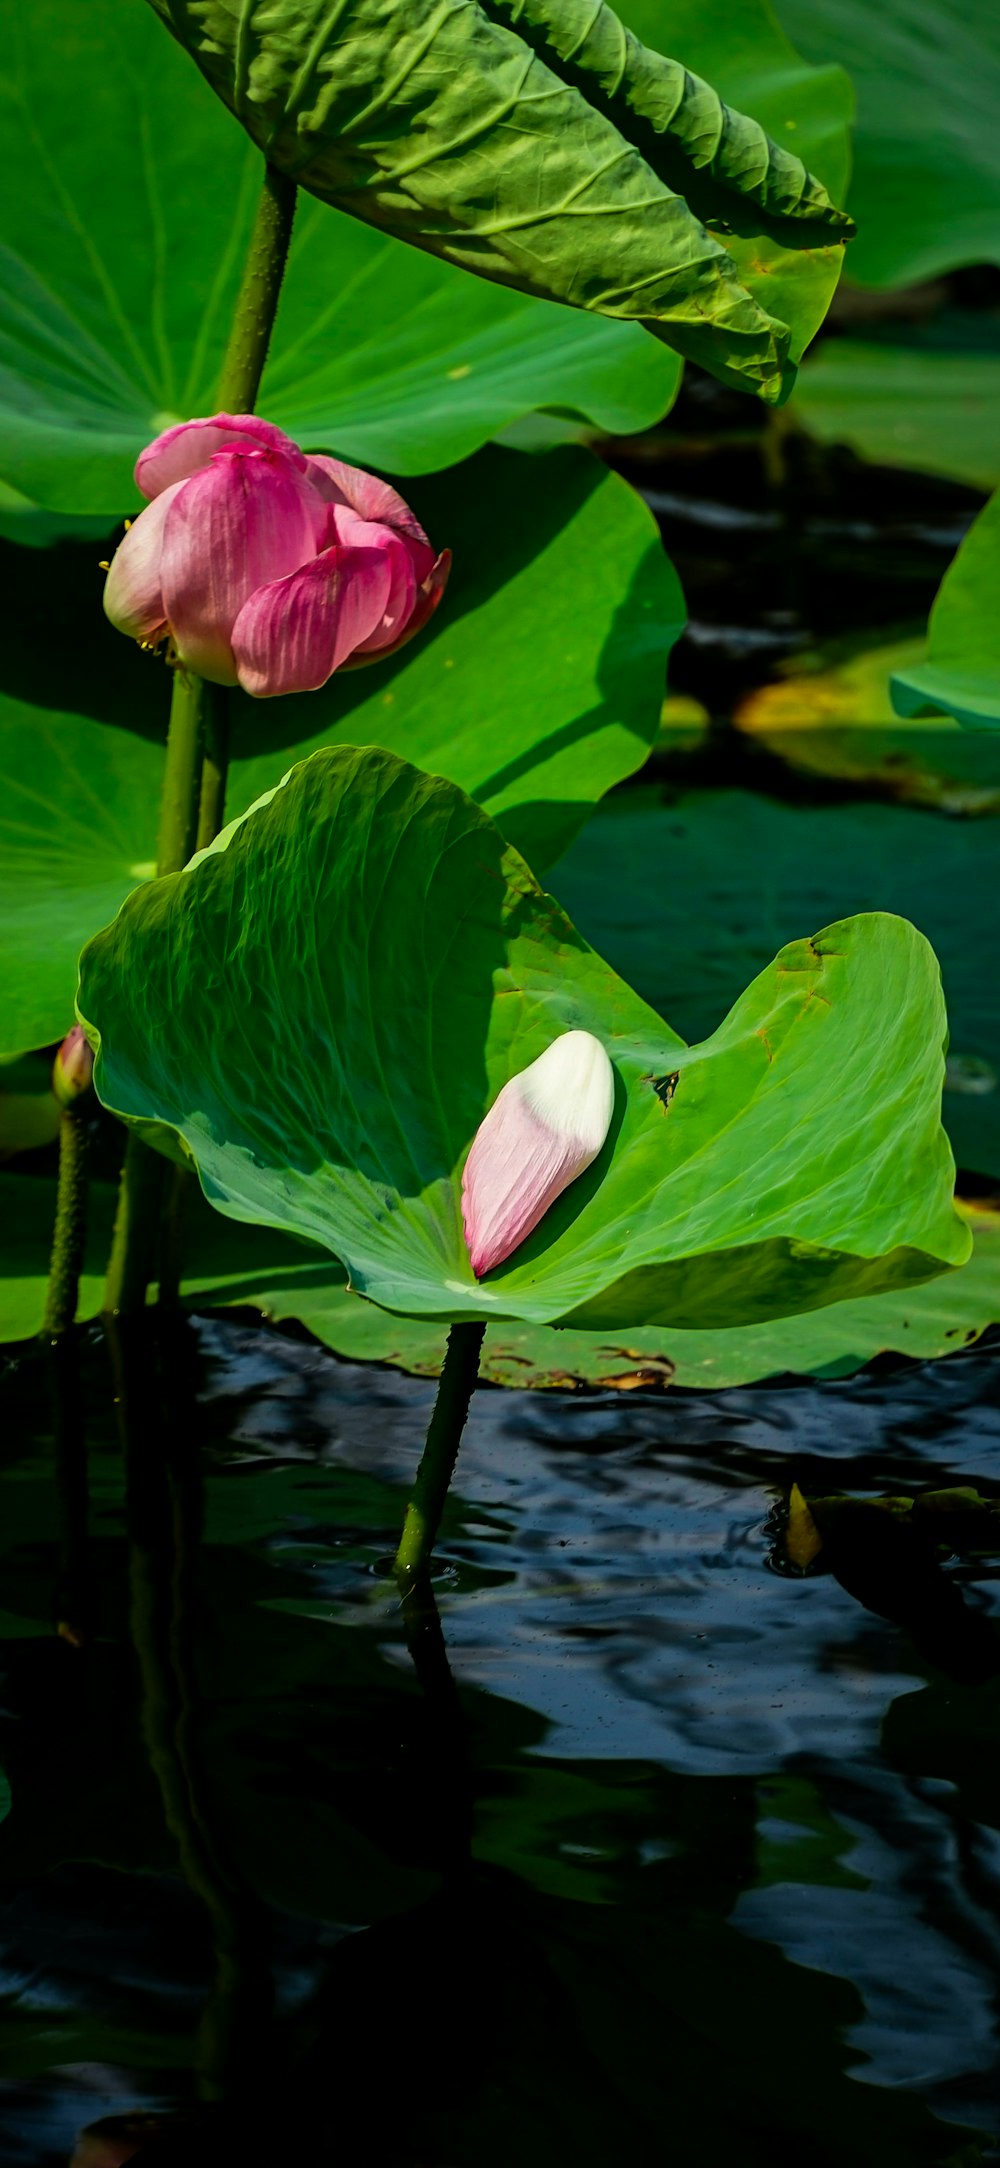 녹색 잎 위에 앉아 있는 분홍색 꽃 두 개